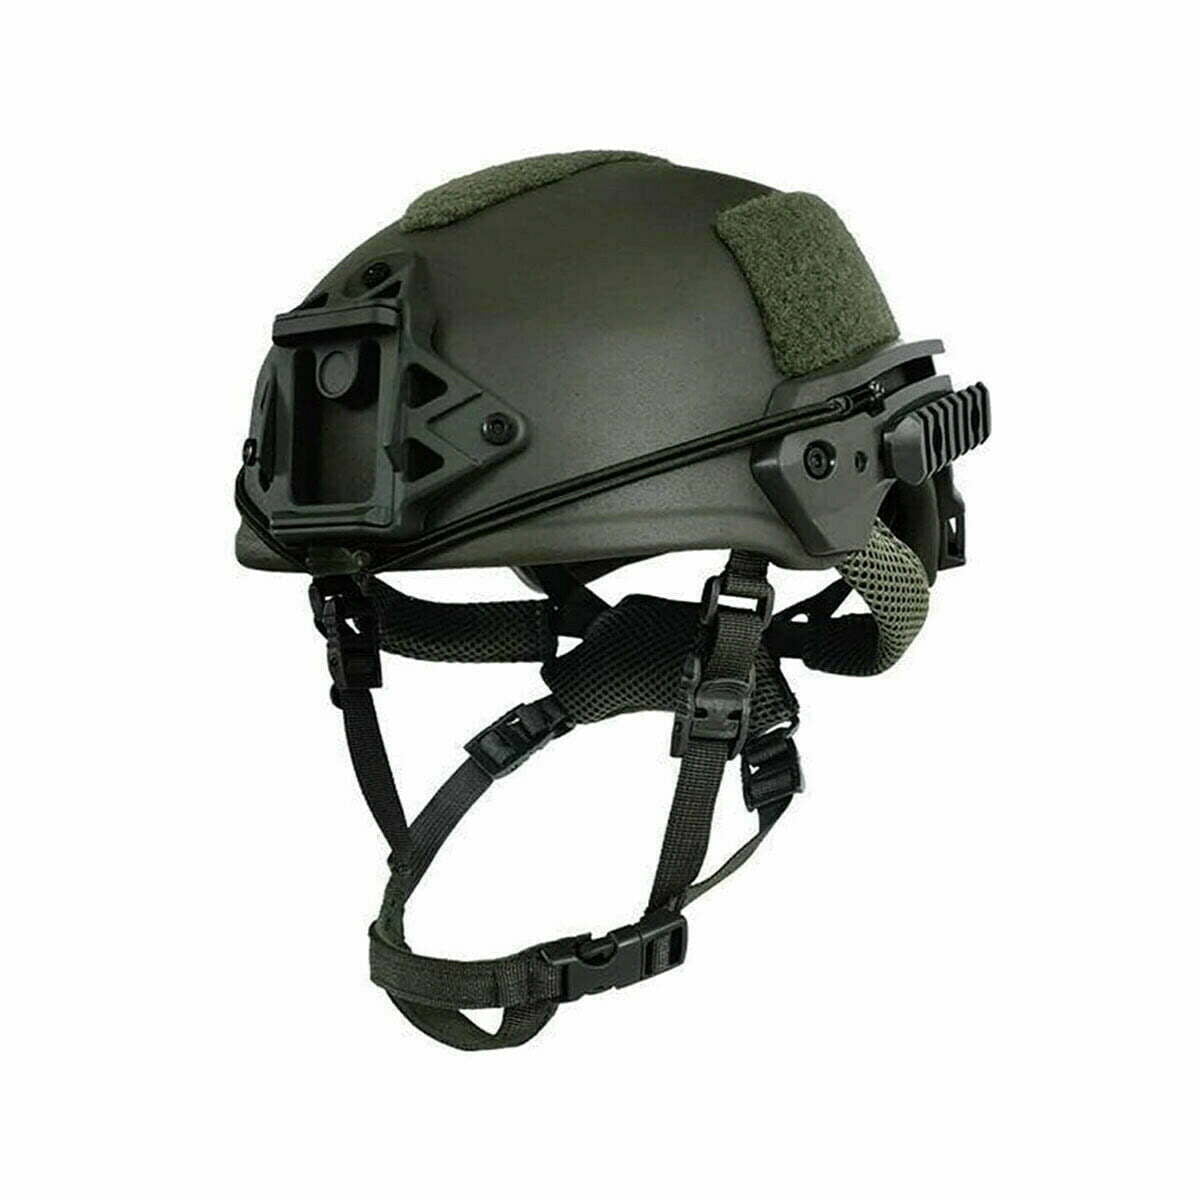 https://tyditiao.com/wp-content/uploads/2022/06/wendy-green-Bulletproof-Helmet-Kevlar-right-elevation-2.jpg